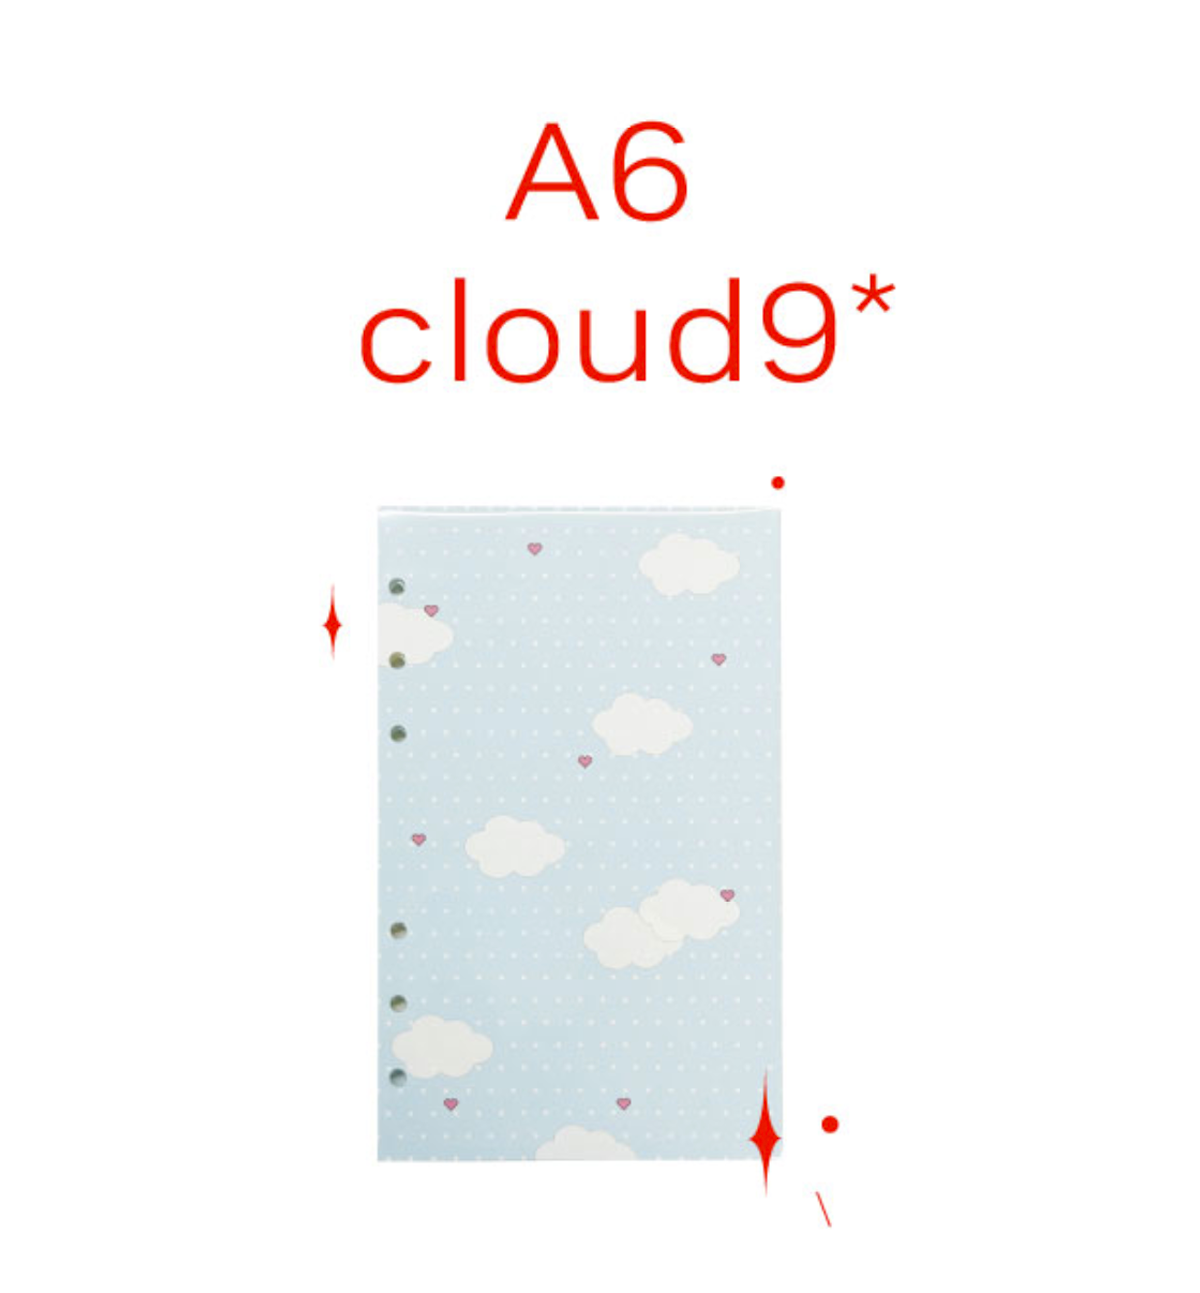 A6 Cloud9 Paper Refill